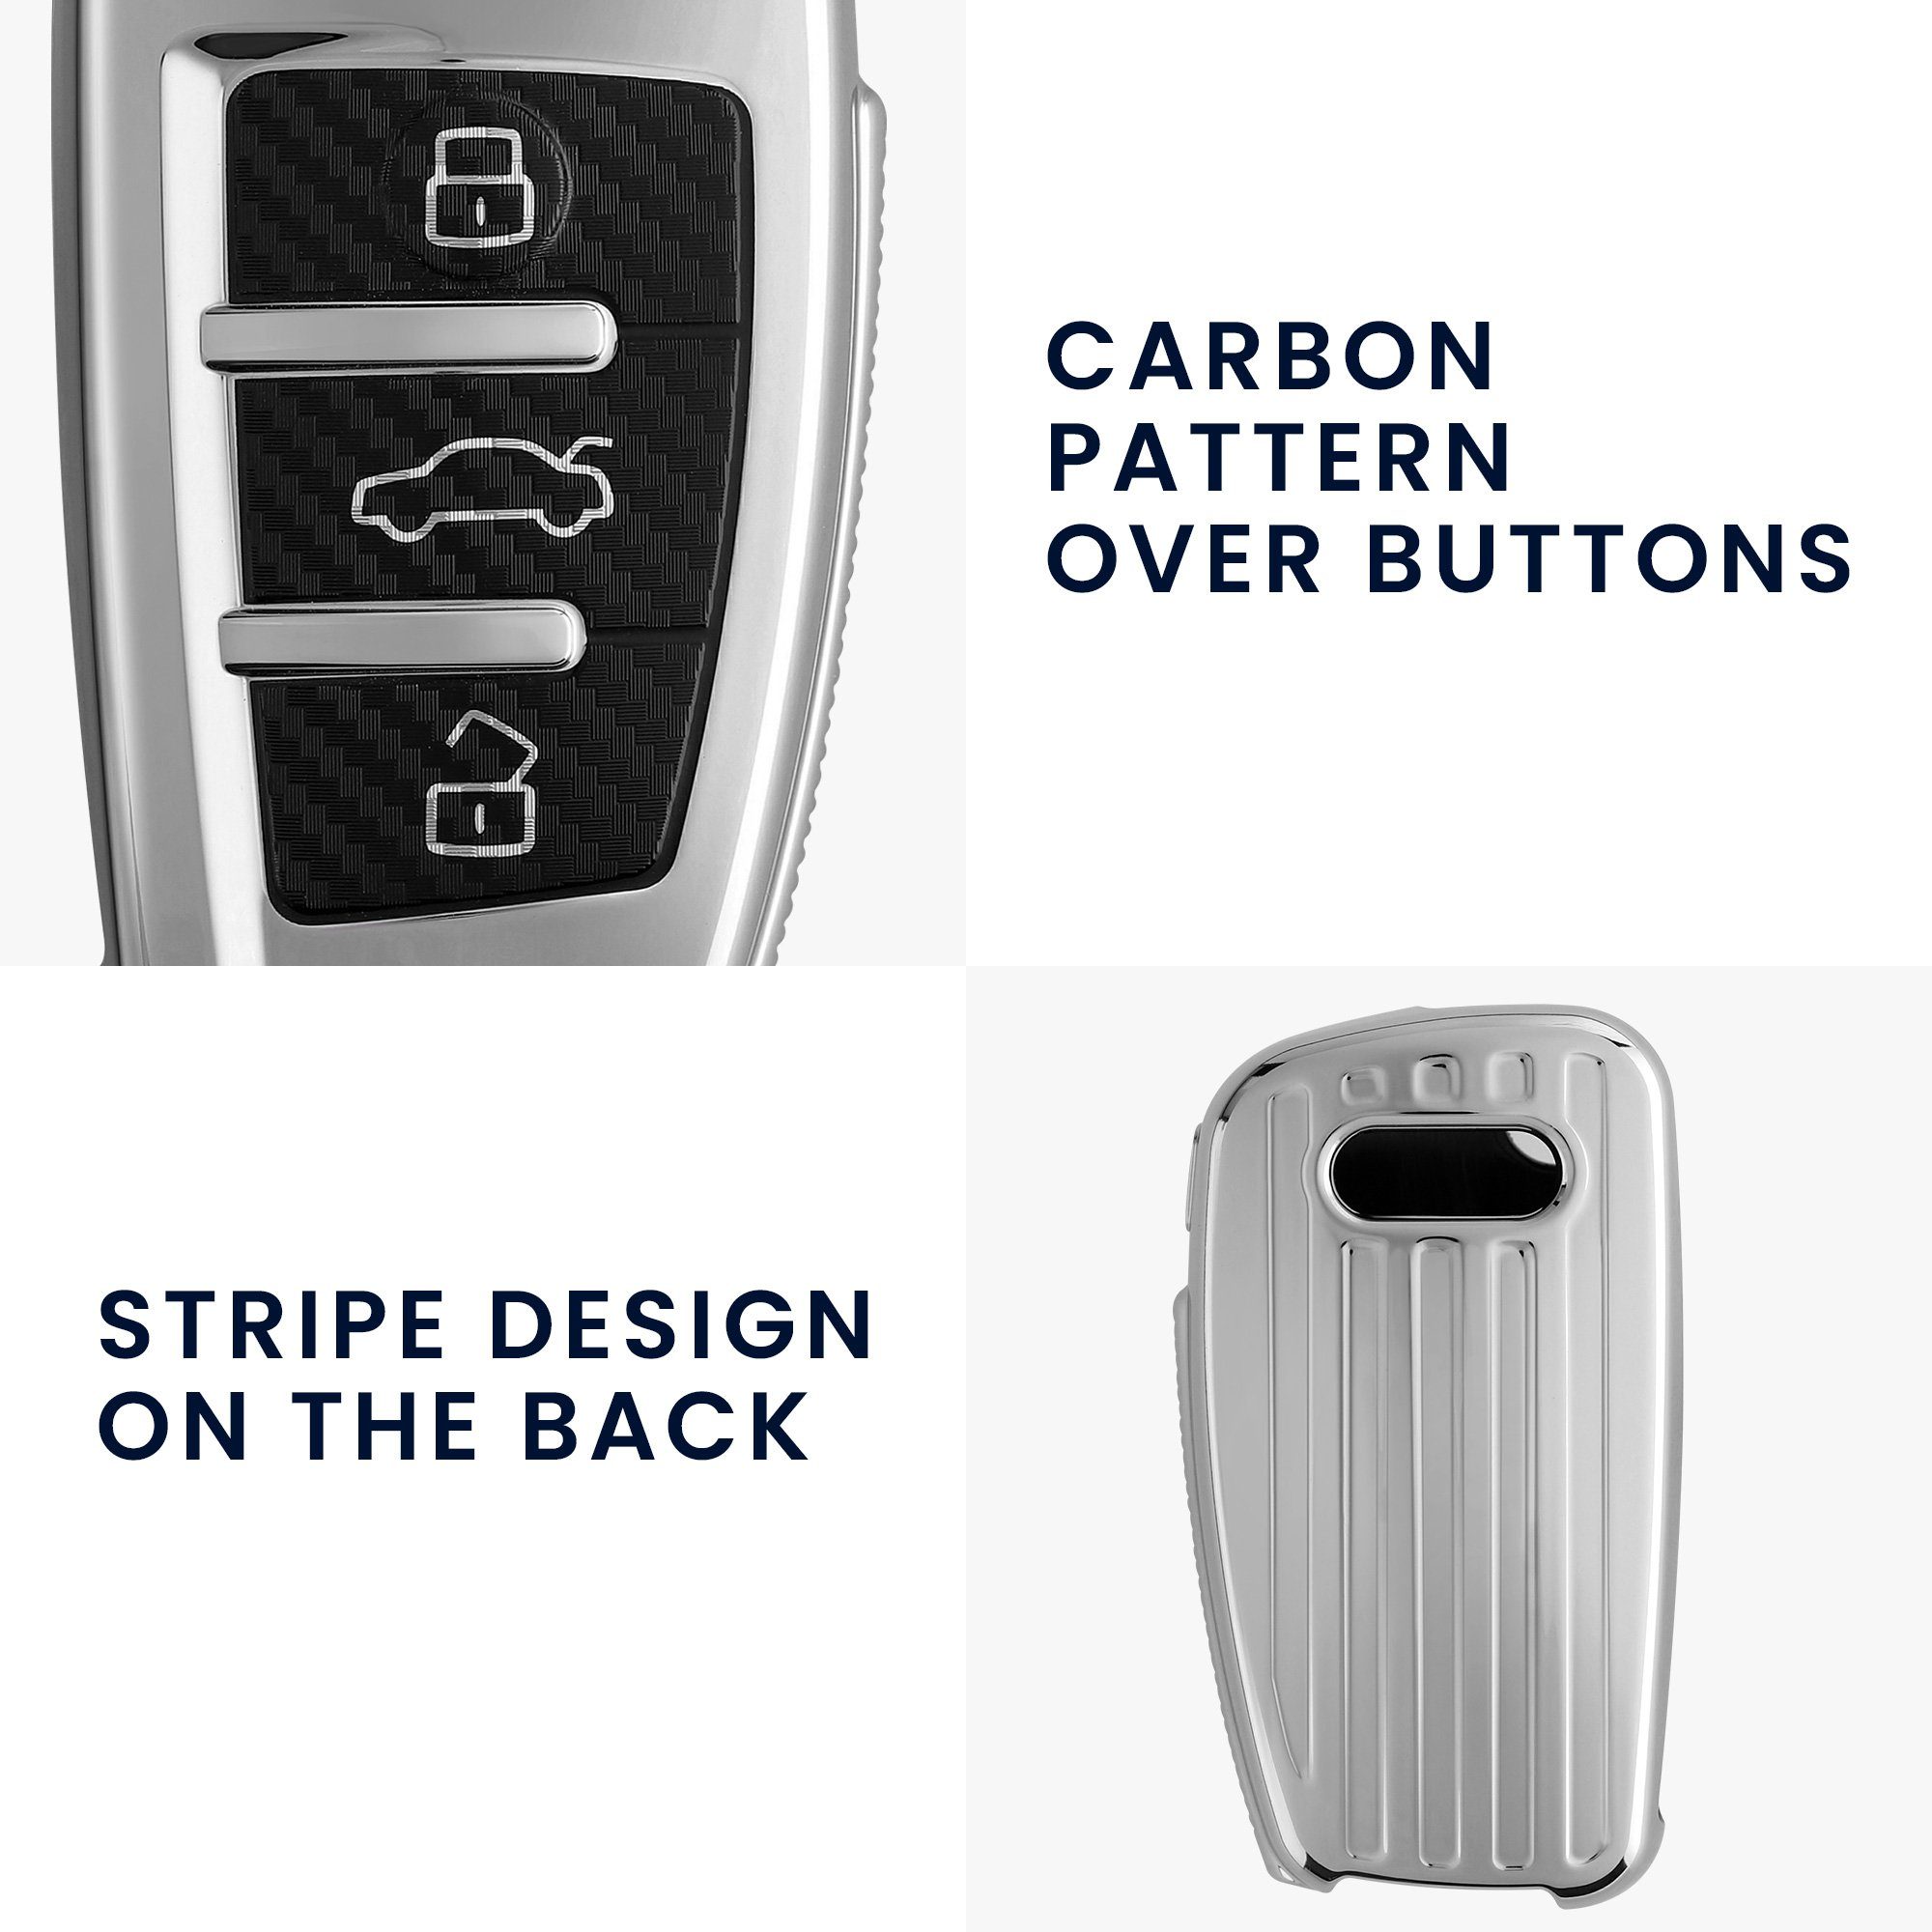 TPU für Cover 3-Tasten Autoschlüssel kwmobile Audi Schlüsselhülle Schlüsseltasche Klappschlüssel, Hülle